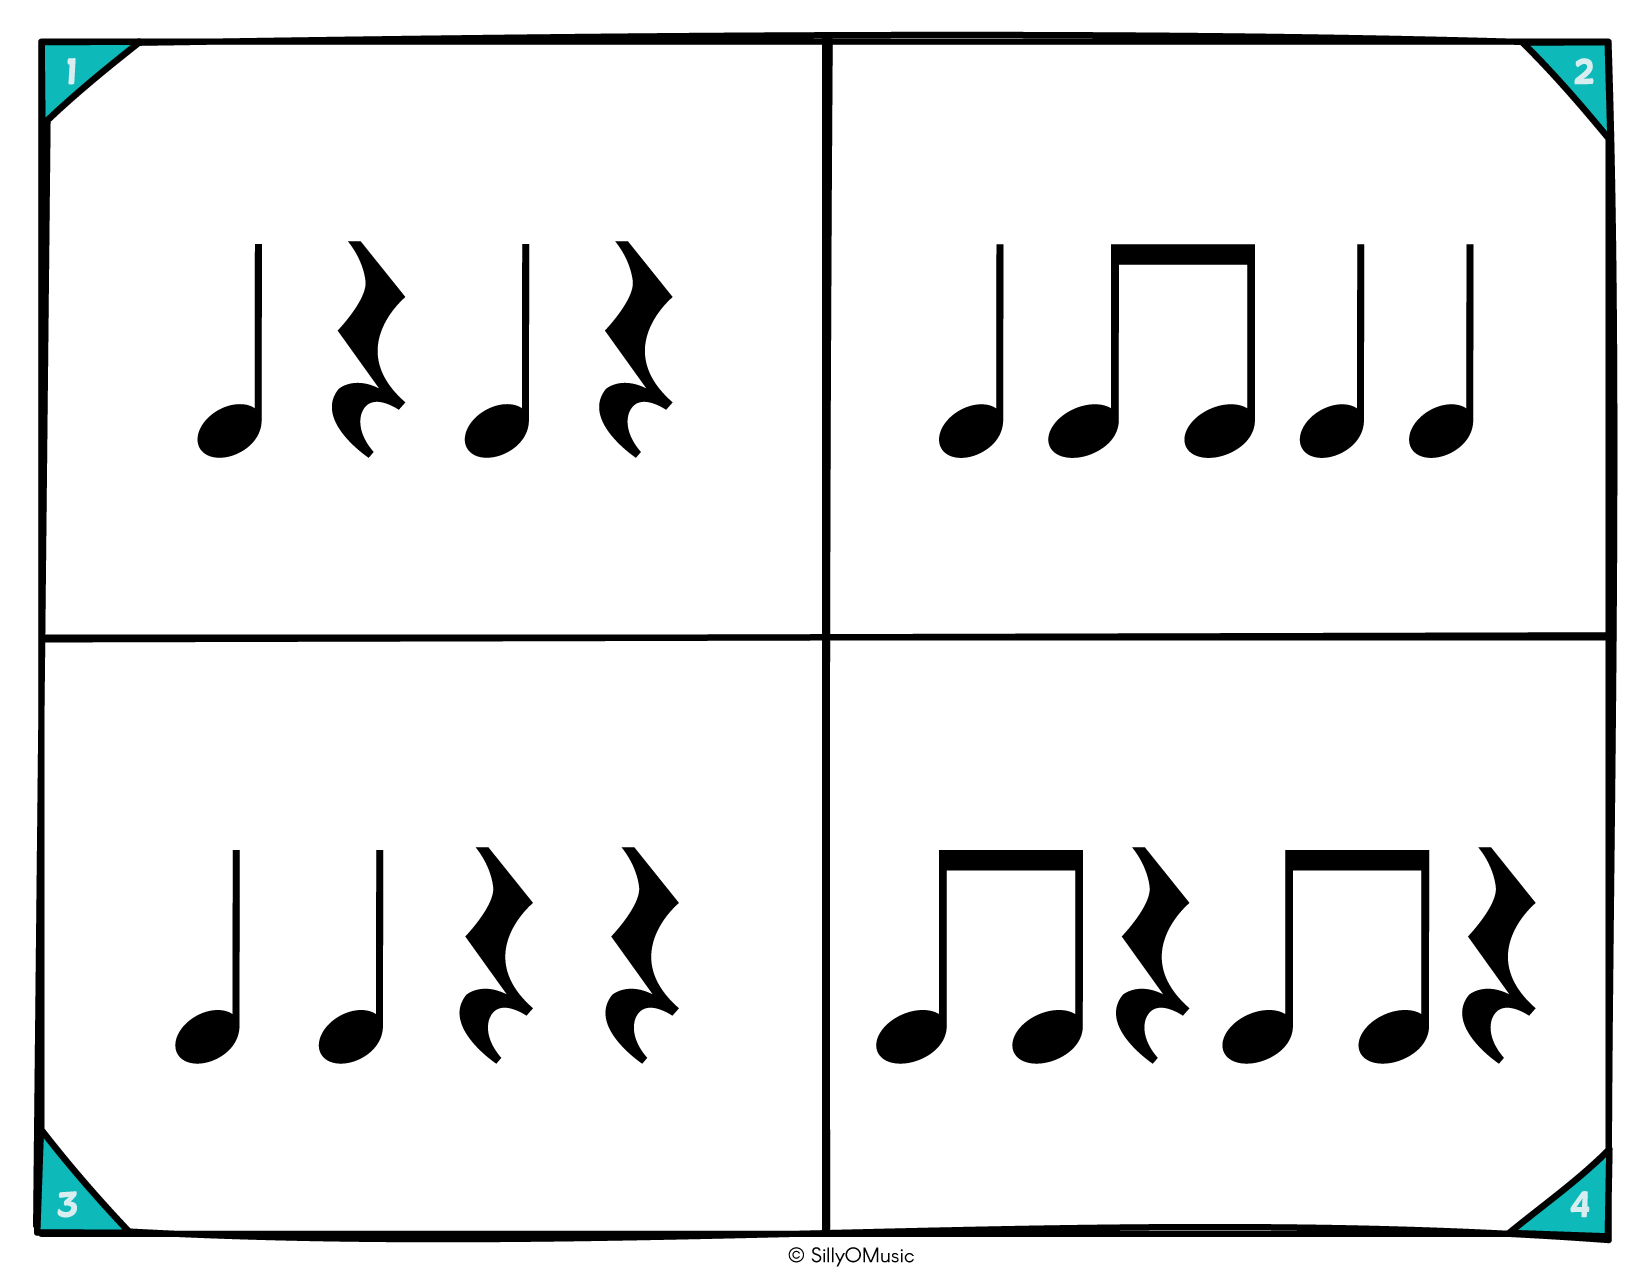 4 square rhythms ta, tit, z-05